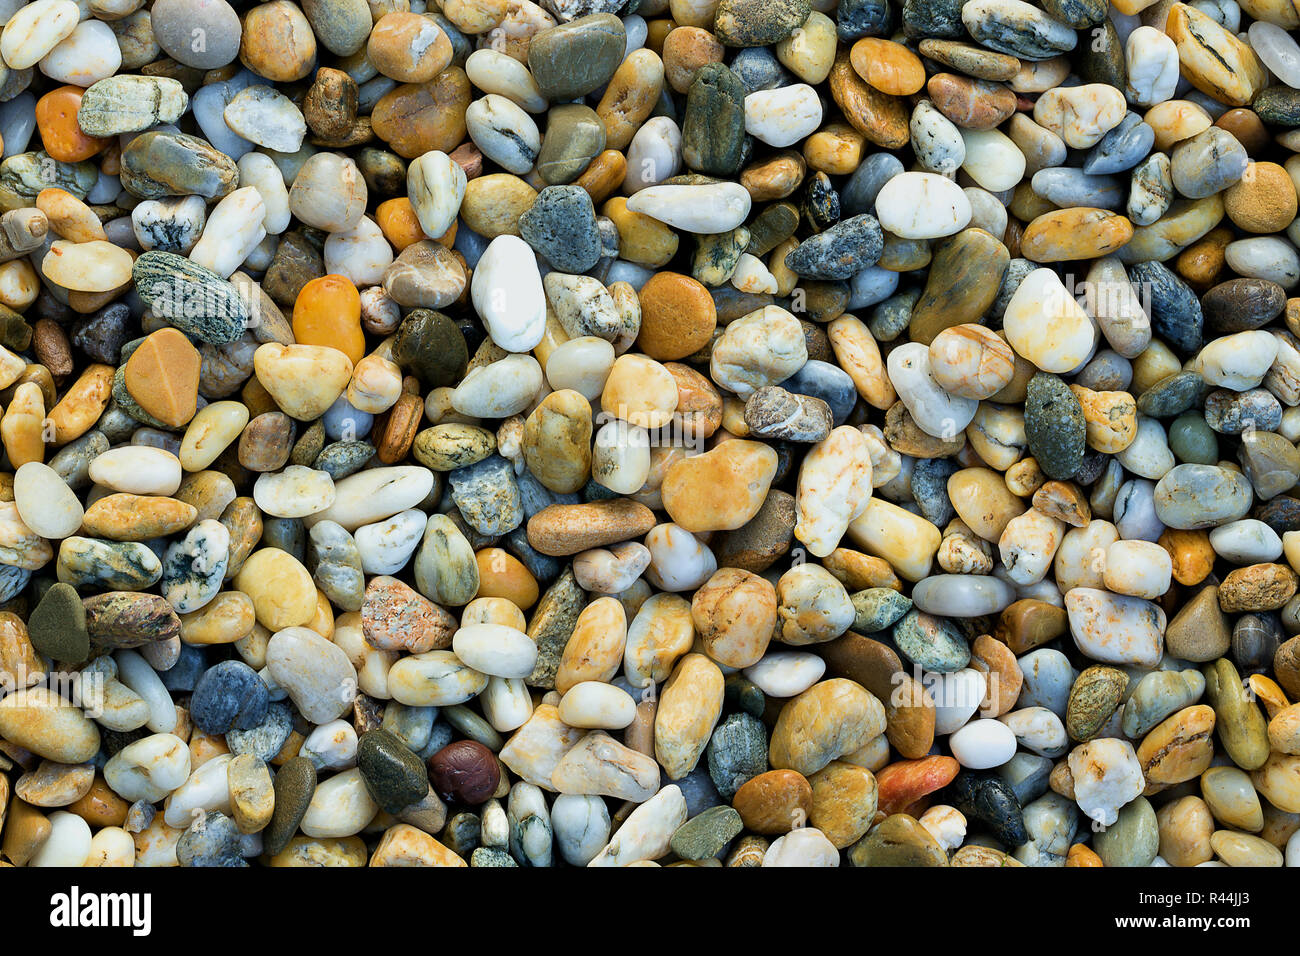 Kies Textur. Kleine Steine, kleine Steine, Kieselsteine in vielen Schattierungen von Grau, Weiß, Braun, Blau, Farbe gelb. Hintergrund Der kleine nasse Steine in Oval Stockfoto